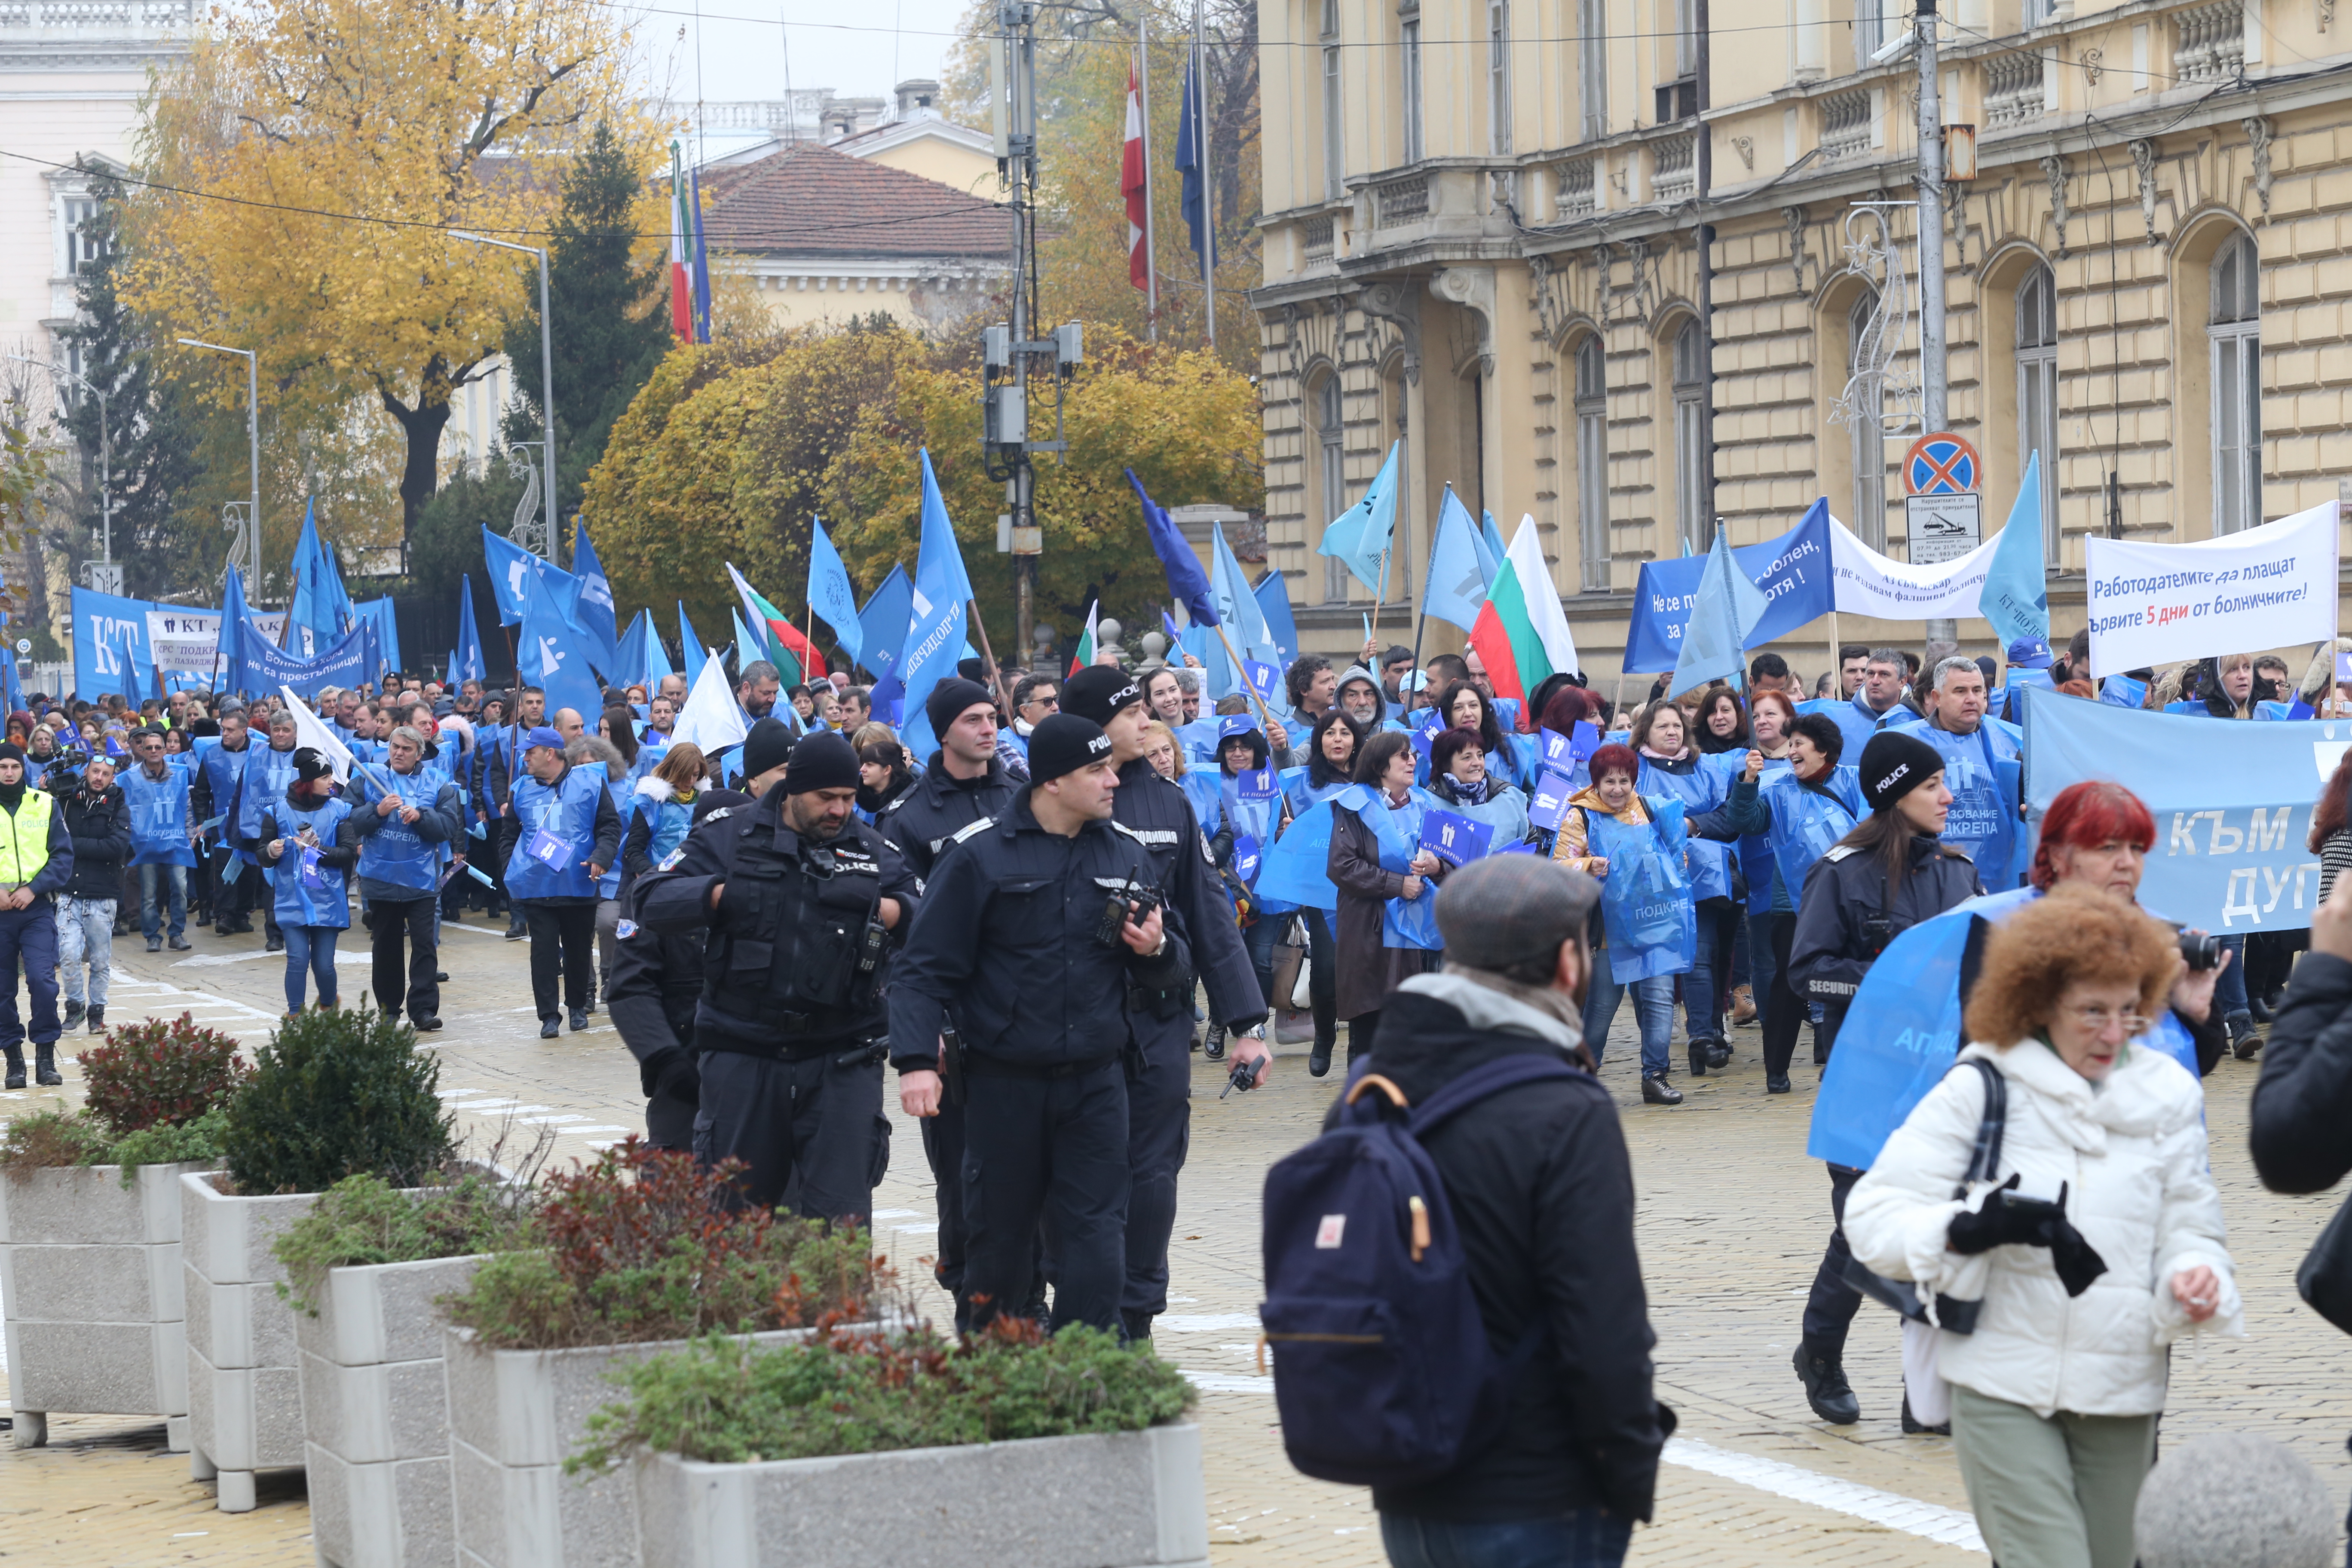 Със скандирания "Болните работници не са престъпници", работещи блокираха движението в части от центъра на София. Недоволството им е предизвикано от предложението на управляващата коалиция първия ден от болничния да не се заплаща.